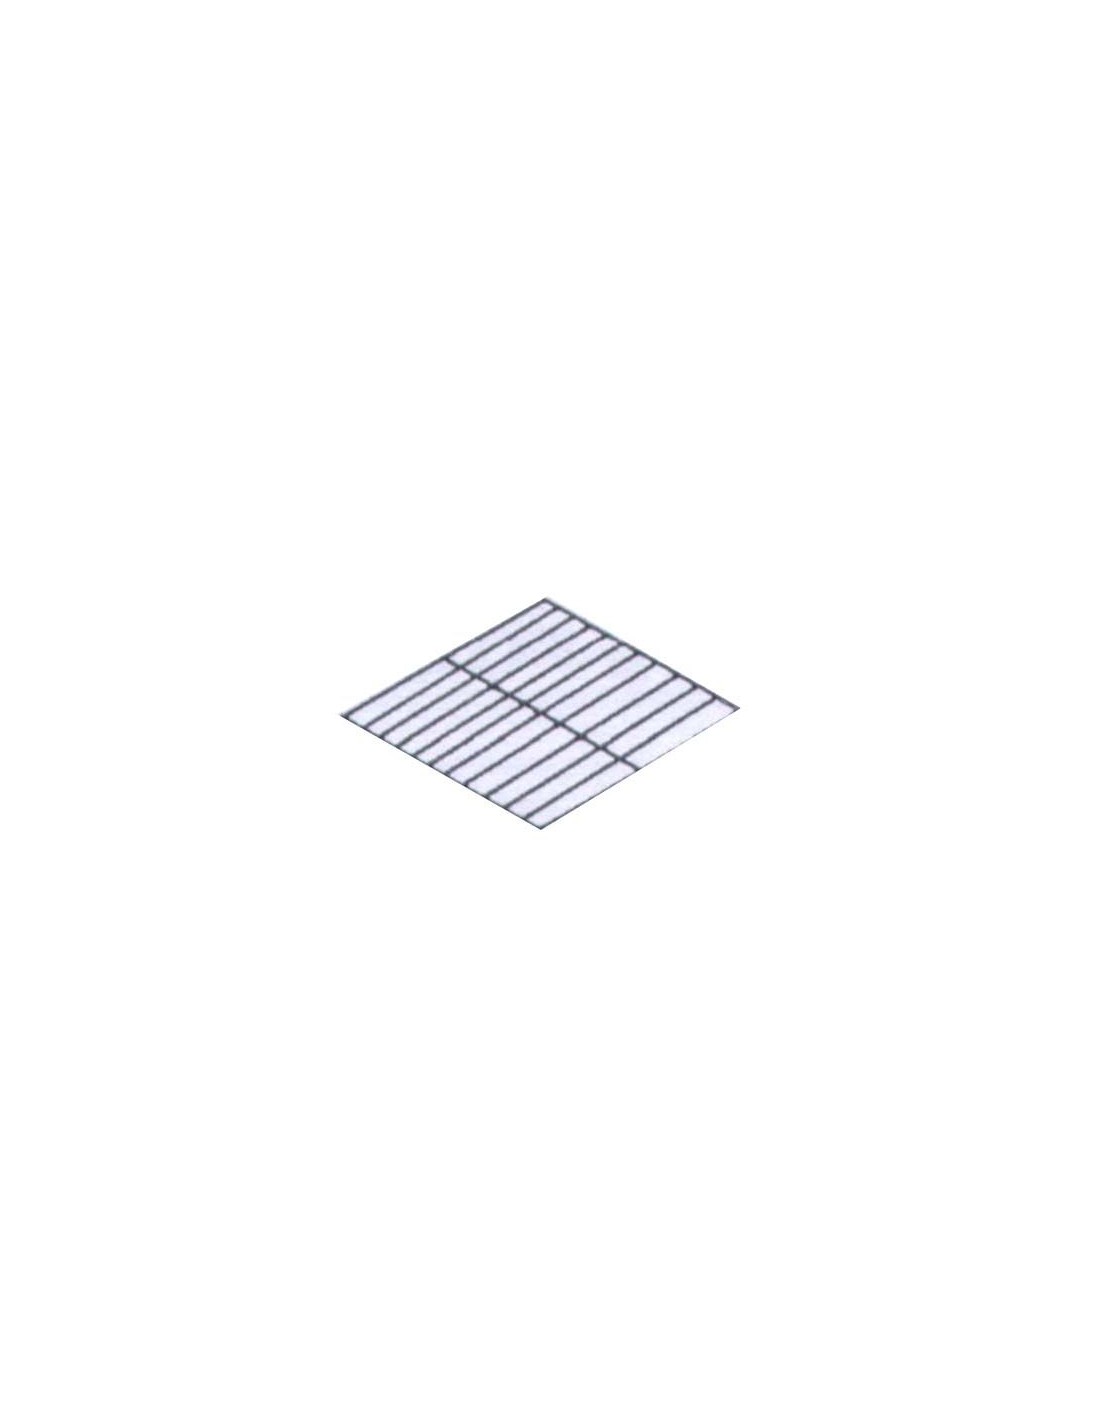 Griglia plastificata pasticceria - Dimensioni cm 60x40